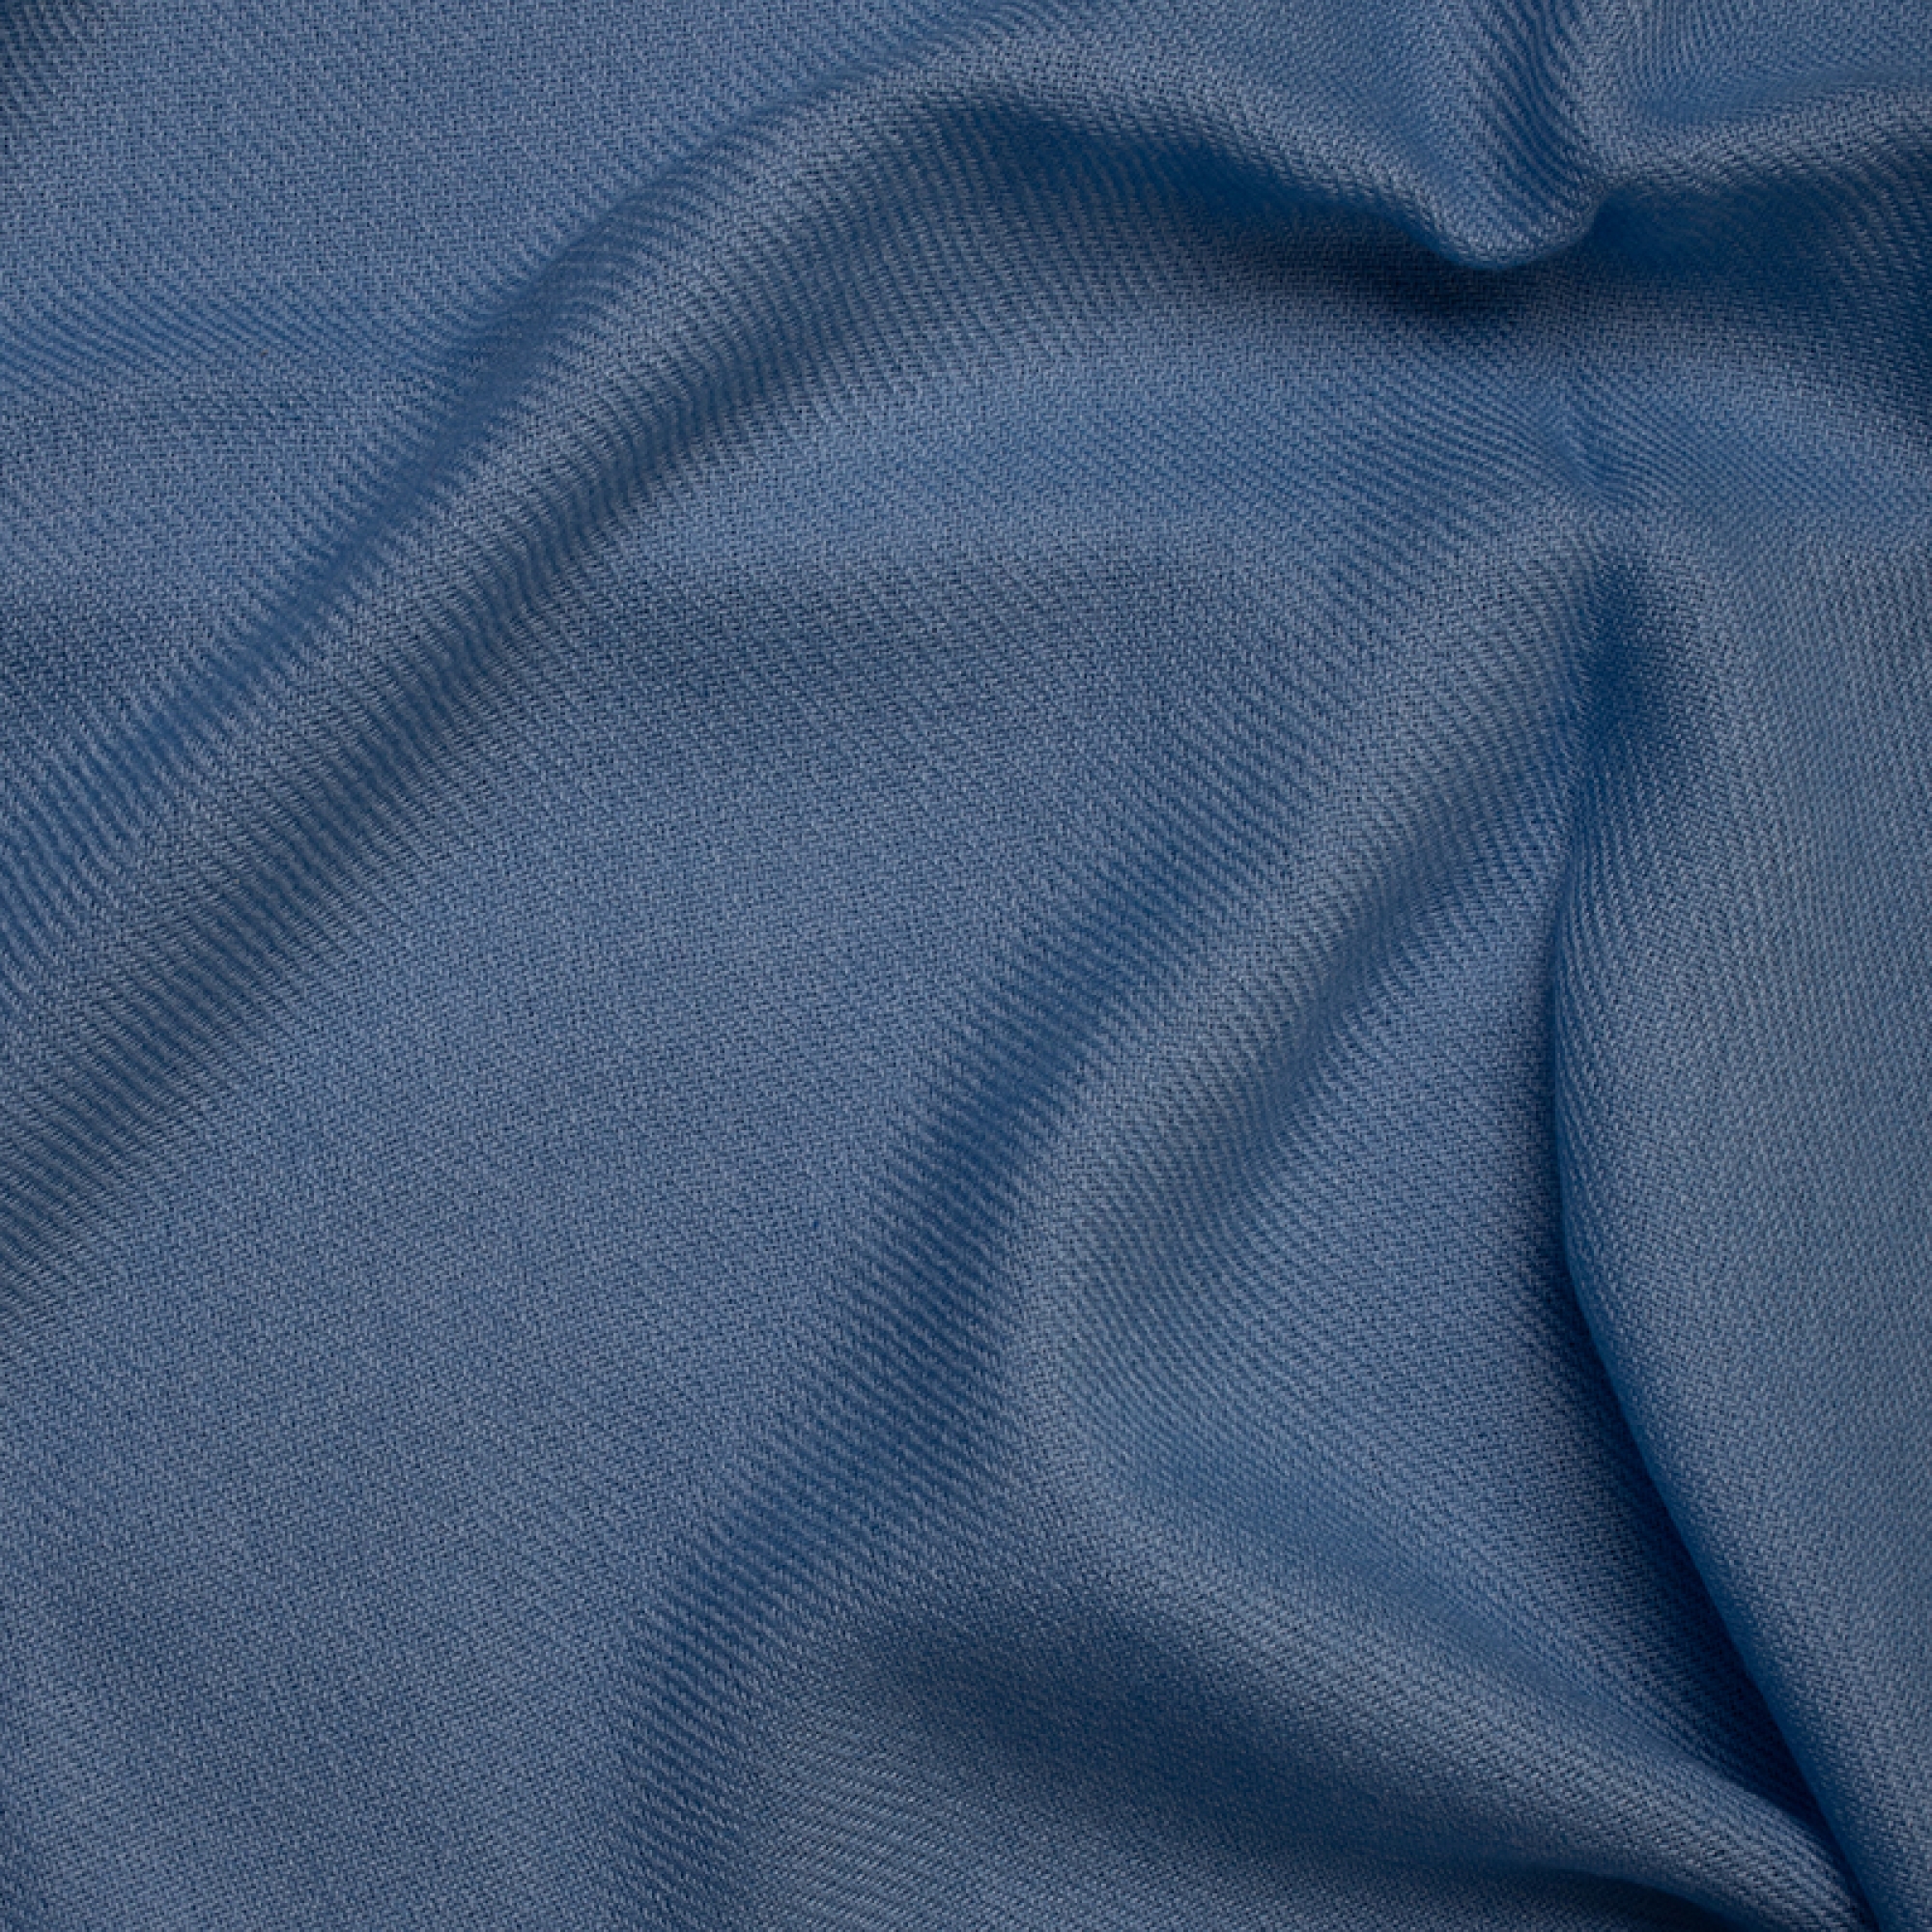 Cachemire accessoires couvertures plaids toodoo plain m 180 x 220 bleu celeste 180 x 220 cm